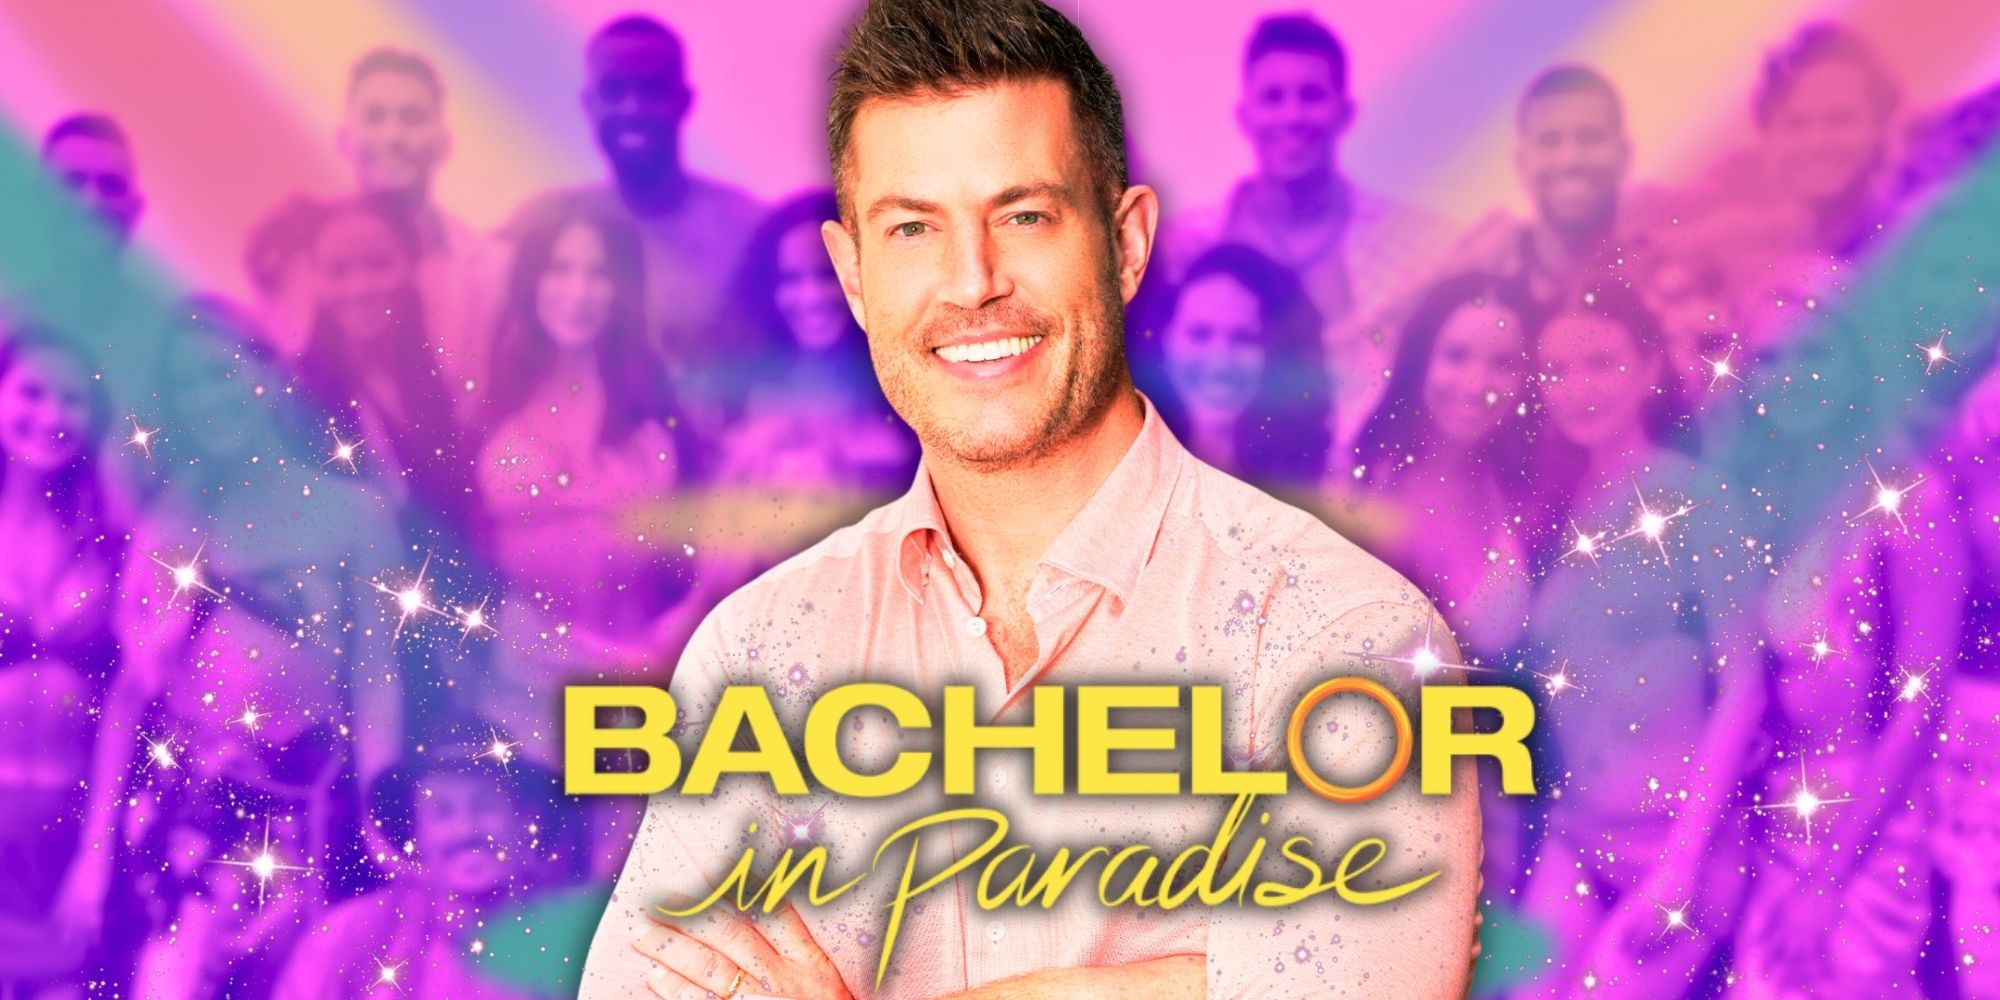 Bachelor In Paradise Temporada 9: ¿Habrá una reunión?